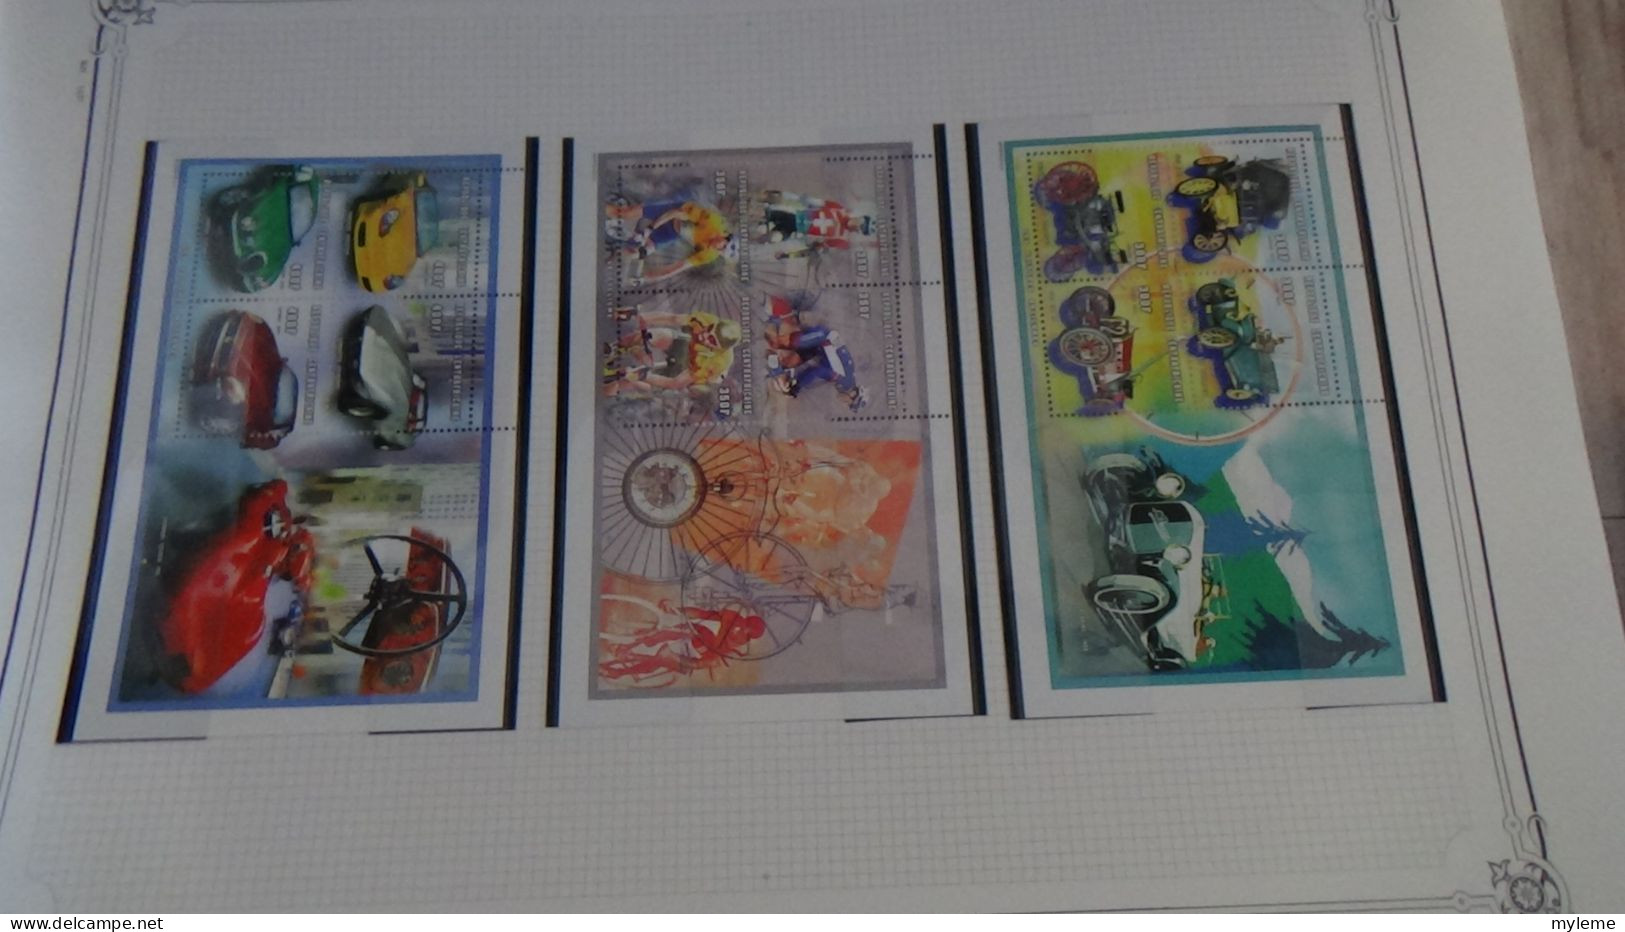 BC102 Collection de timbres et blocs ** de Centrafrique sur feuille d'album.  A saisir !!!